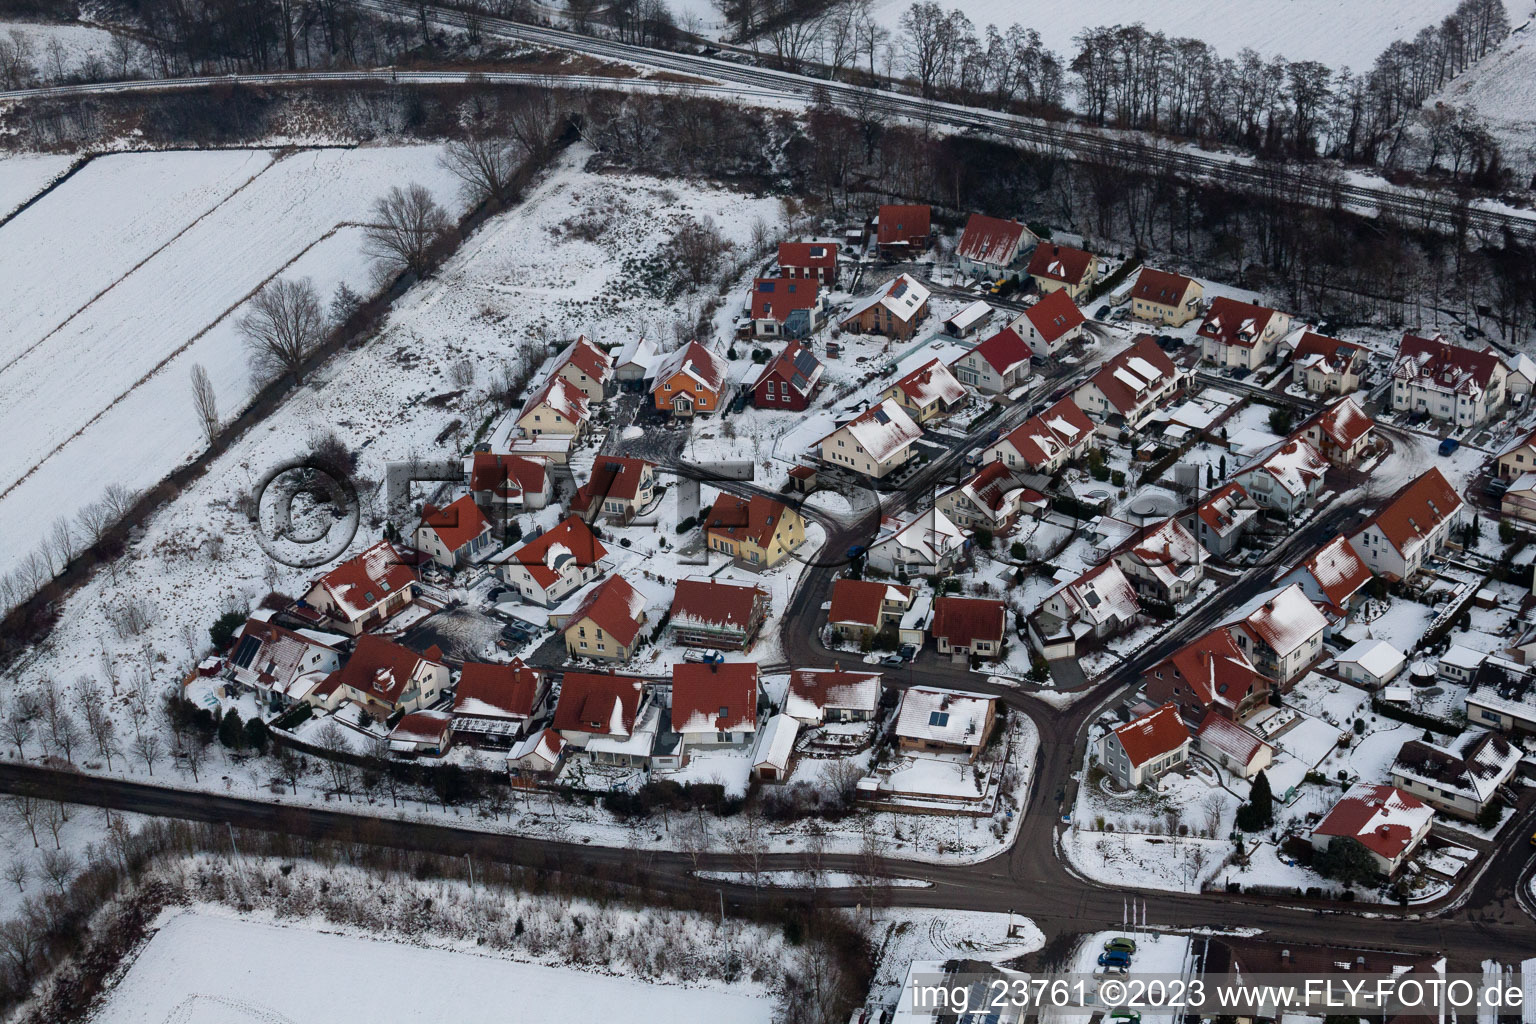 Winden im Bundesland Rheinland-Pfalz, Deutschland von der Drohne aus gesehen